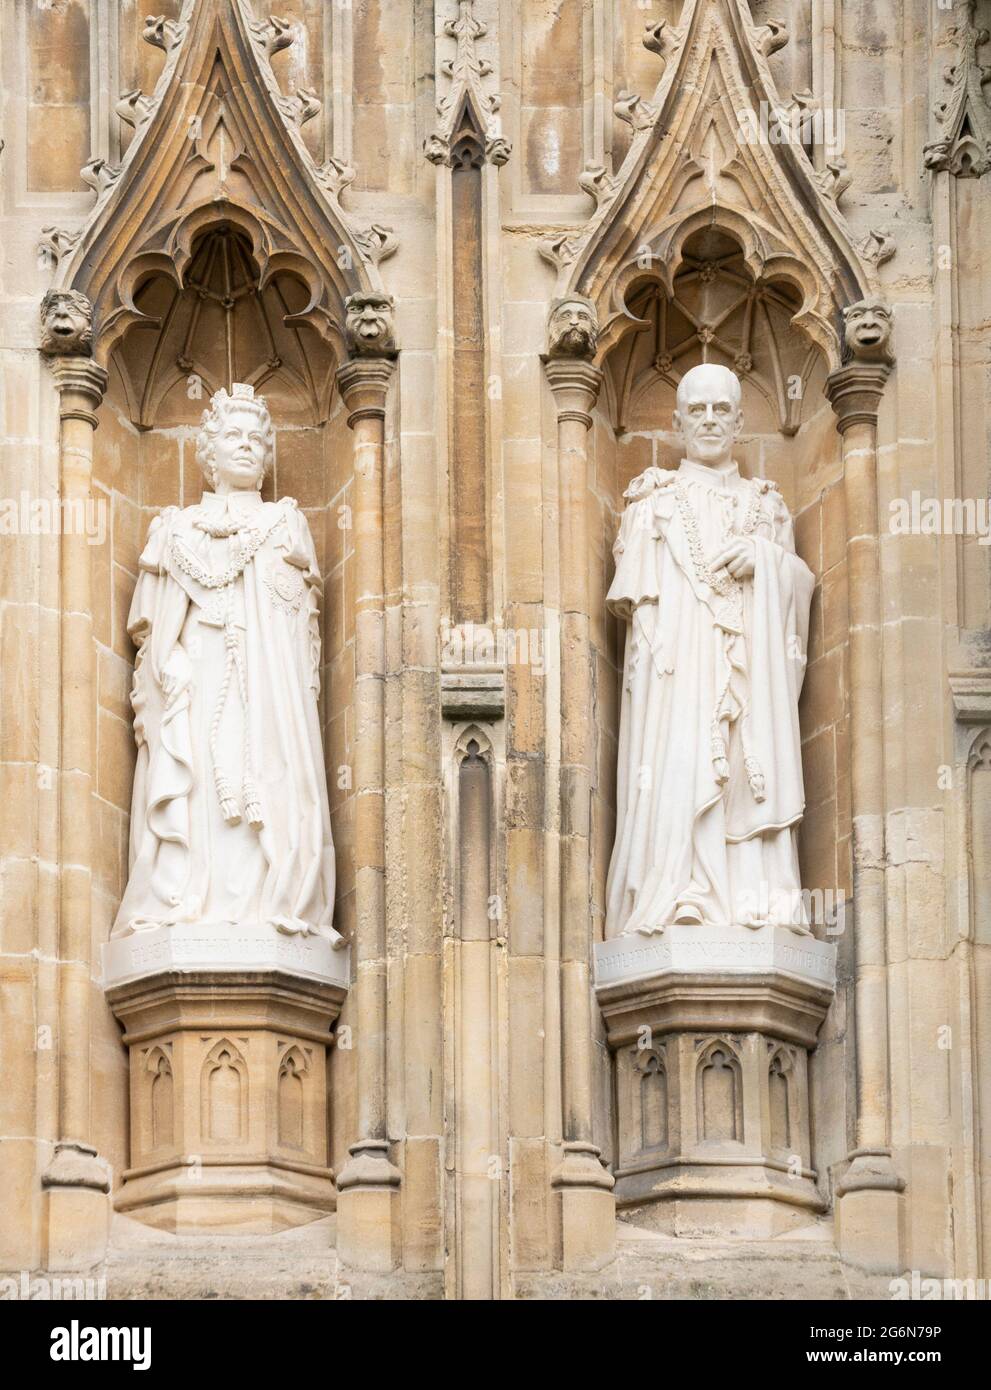 Le statue della Cattedrale di Canterbury della Regina Elisabetta II e del Principe Filippo Duca di Edimburgo di Nina Bilby (Giubileo del Diamante 2015) Canterbury Kent Inghilterra UK Foto Stock